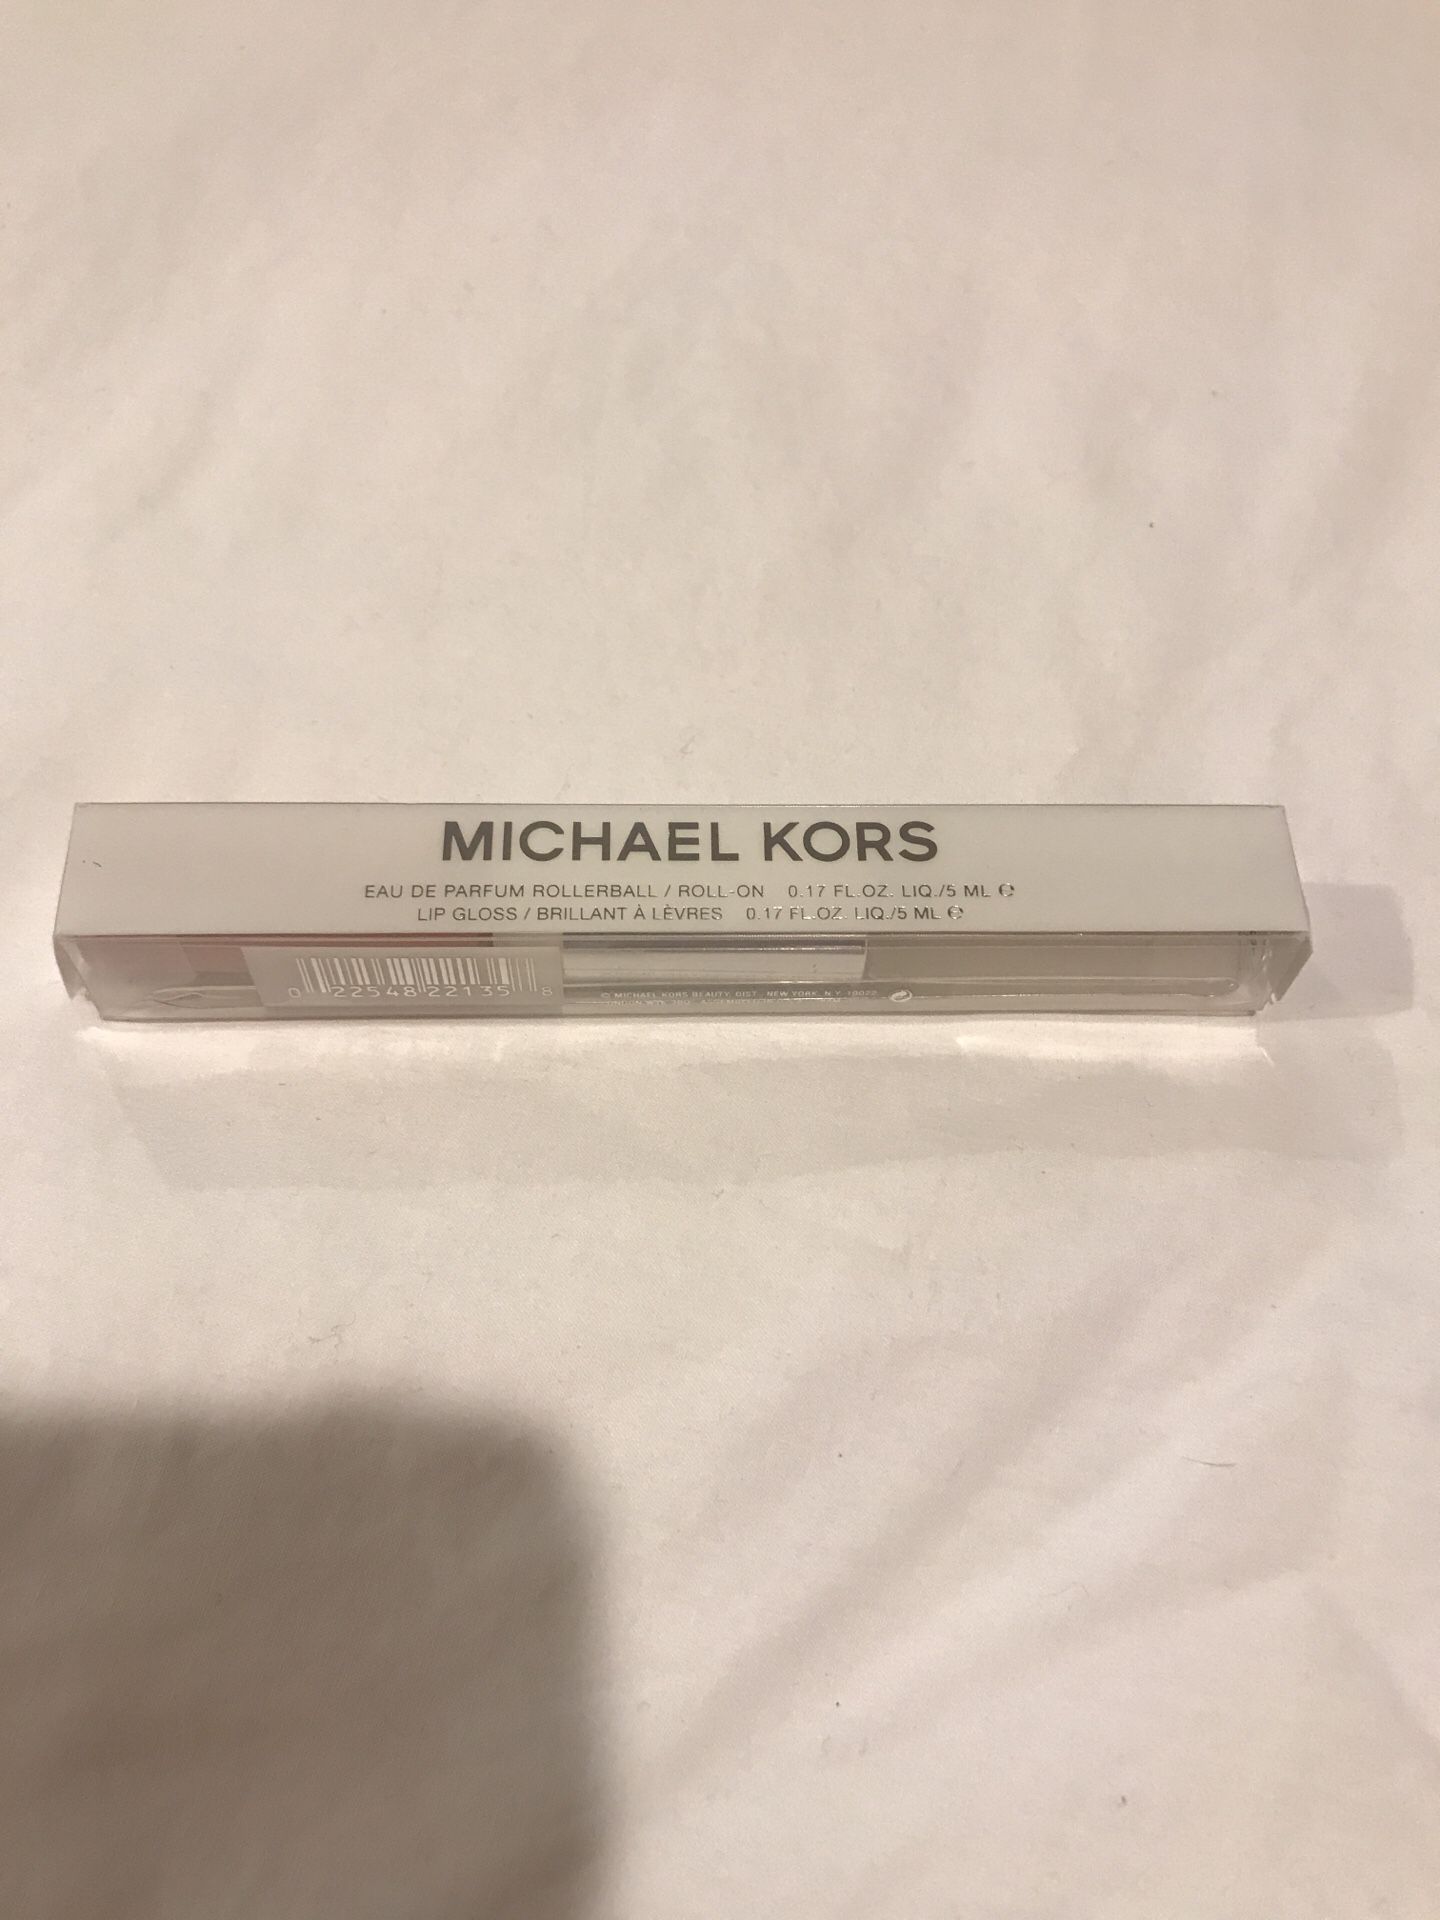 Michael kors perfume and lip gloss